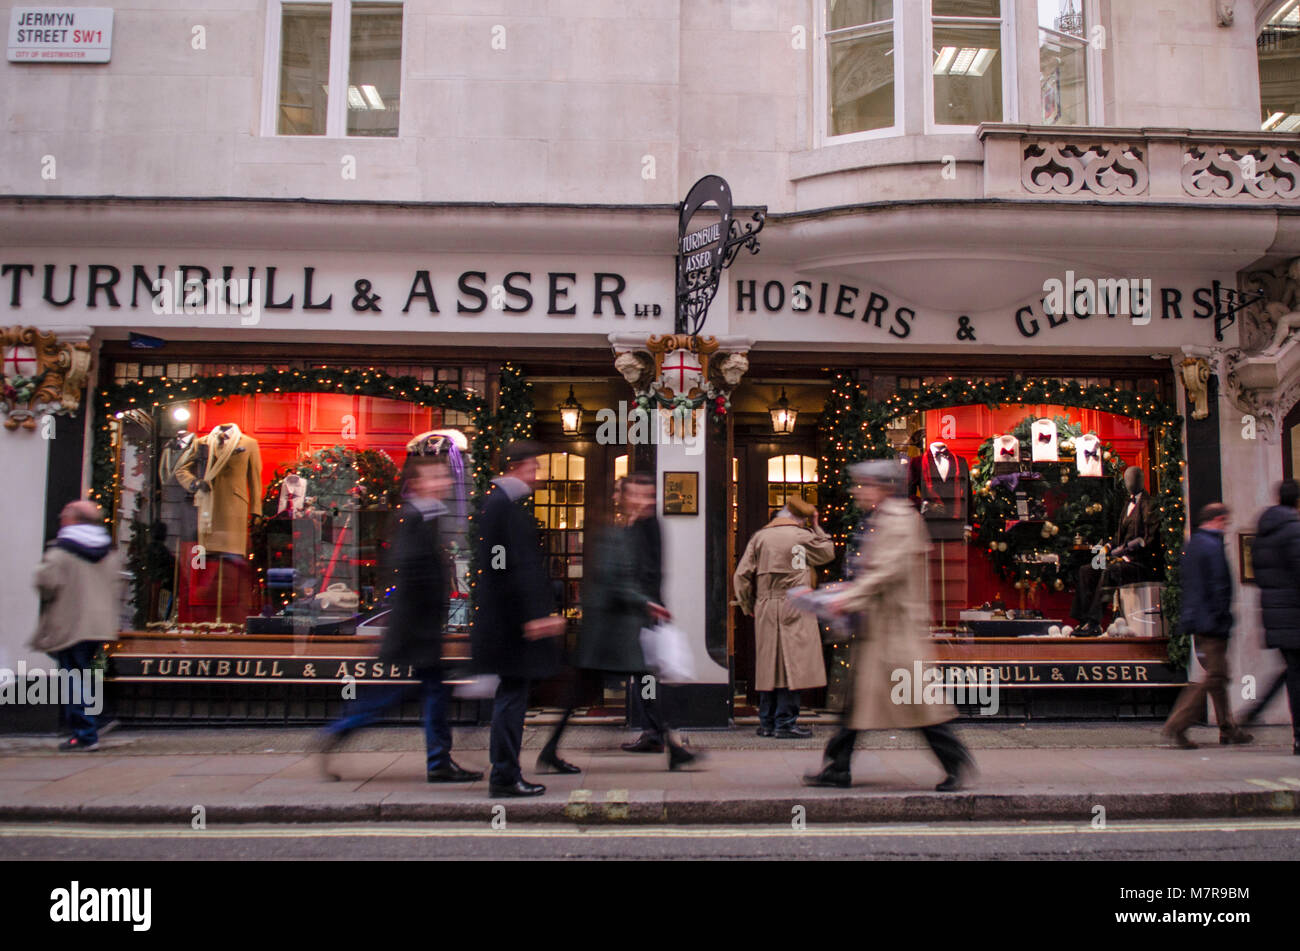 Los compradores de Jermyn Street, y cotizado street en Mayfair, cerca de St James Street y Piccadilly, famosa por sus sastres y galerías de arte. Foto de stock